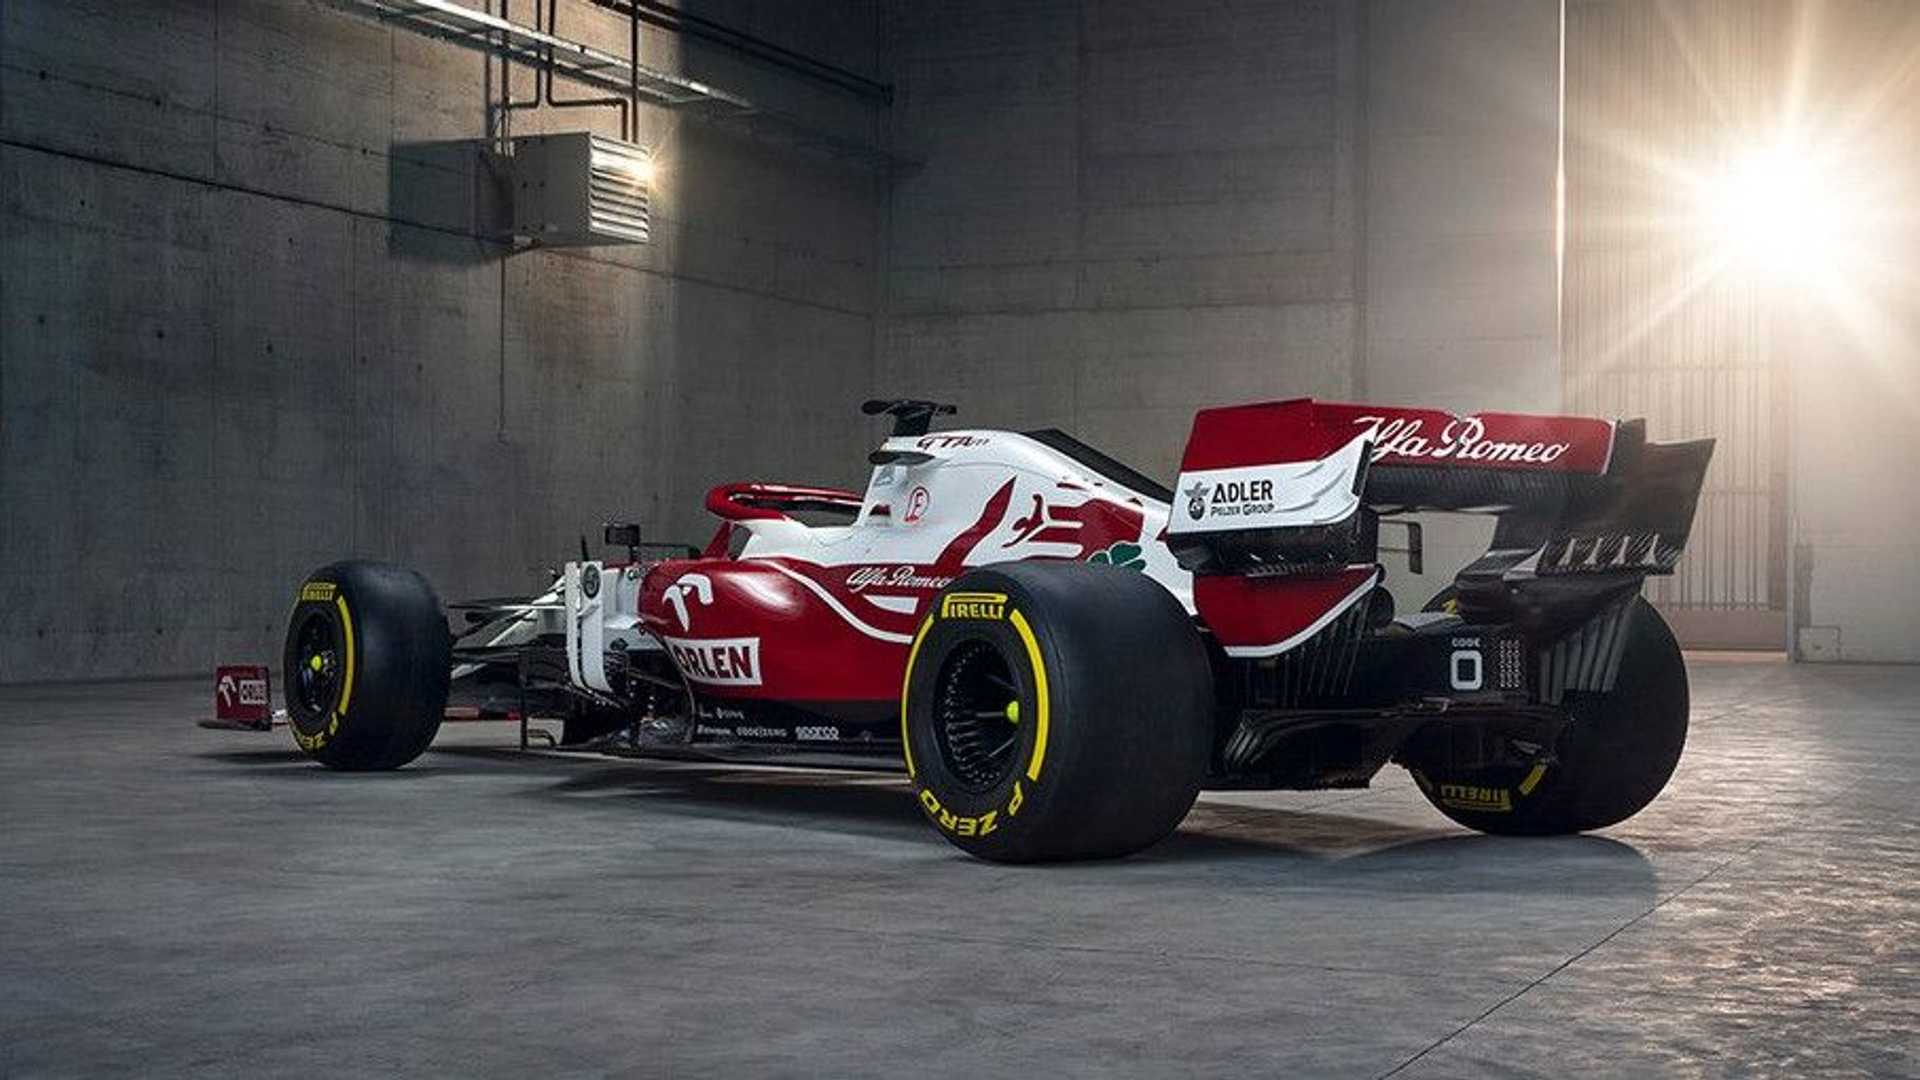 Alfa Romeo unveils its 2021 Formula 1 car